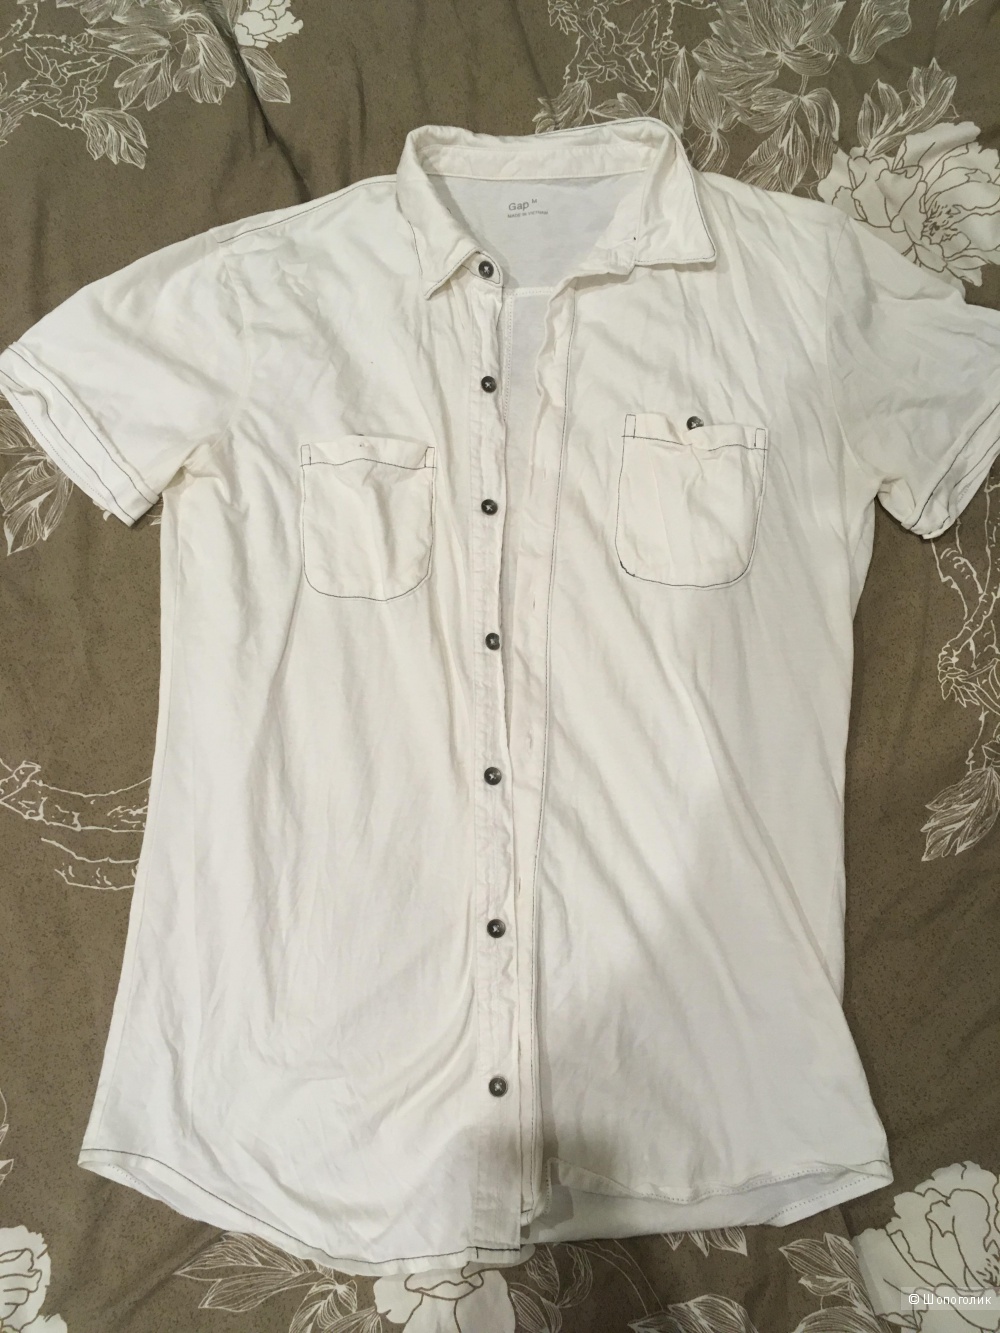 Рубашка мужская Gap, хлопок, размер L